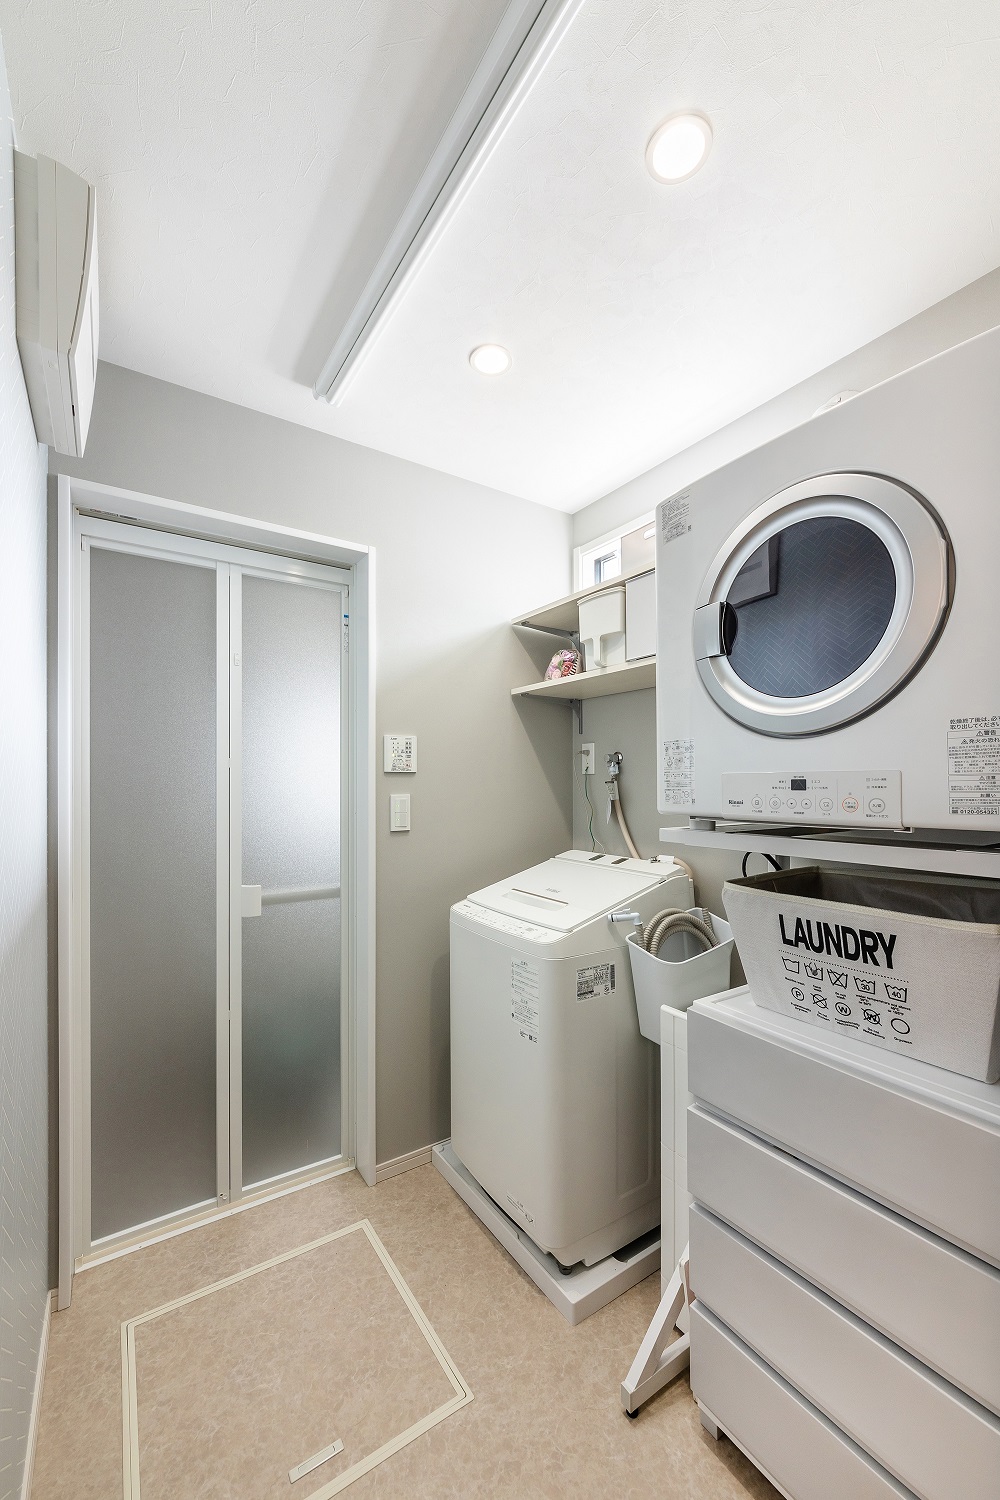 脱衣室には洗濯機と乾燥機を配置しています。スペースに合った収納ボックスを利用し、シンプルかつスマートな収納を実現しました。